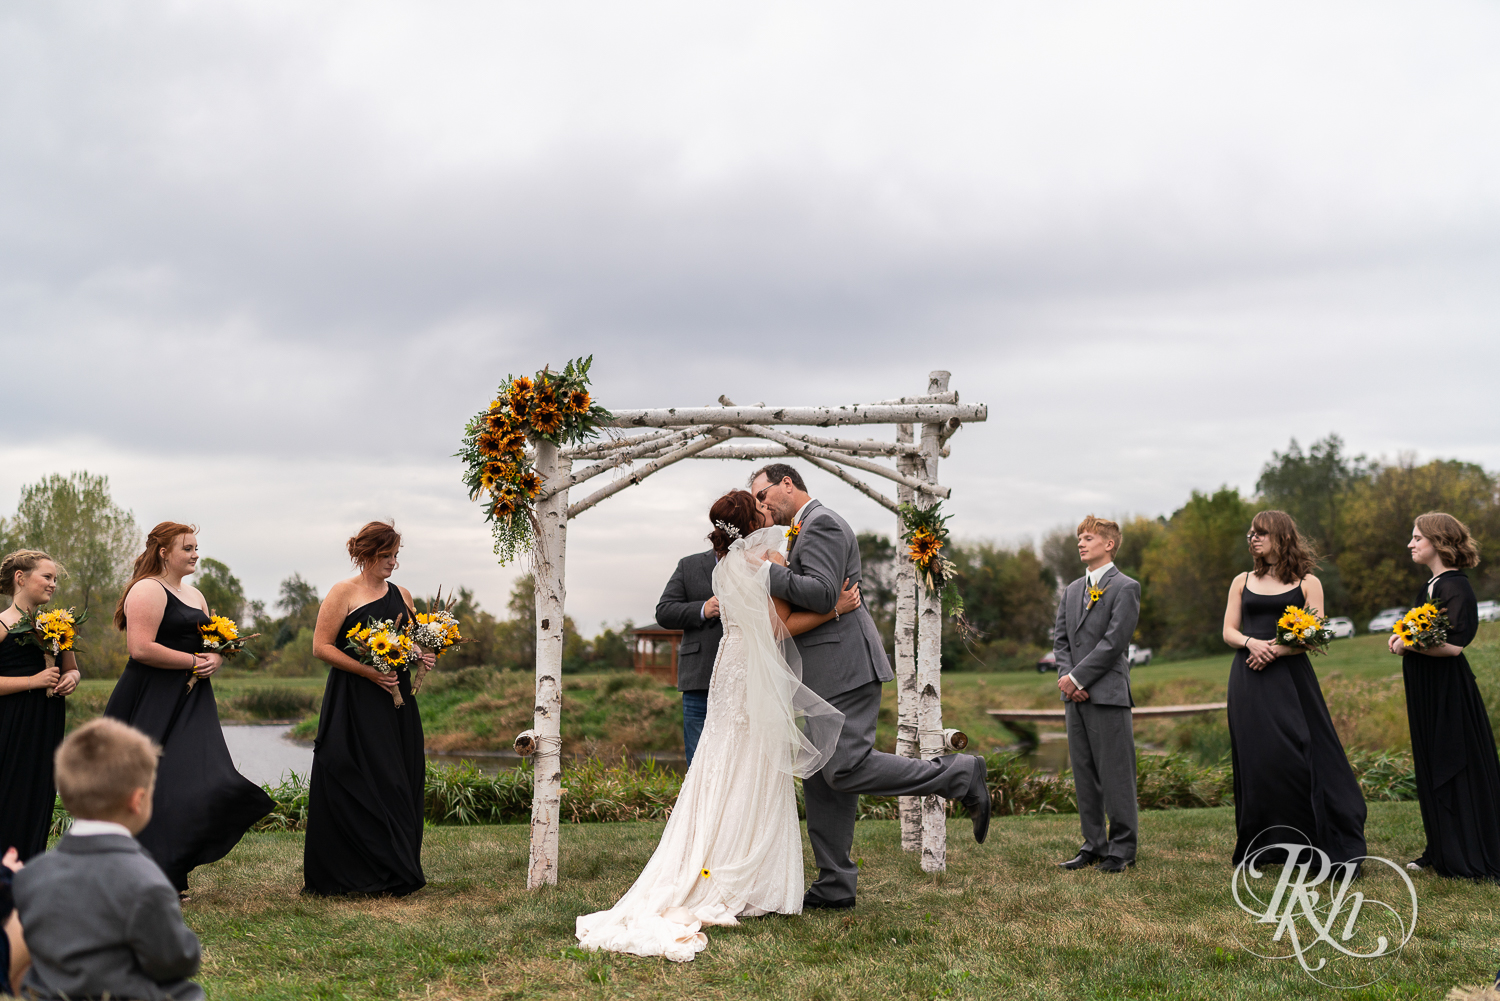 First kiss at outdoor barn wedding ceremony at Barn at Crocker's Creek in Faribault, Minnesota.